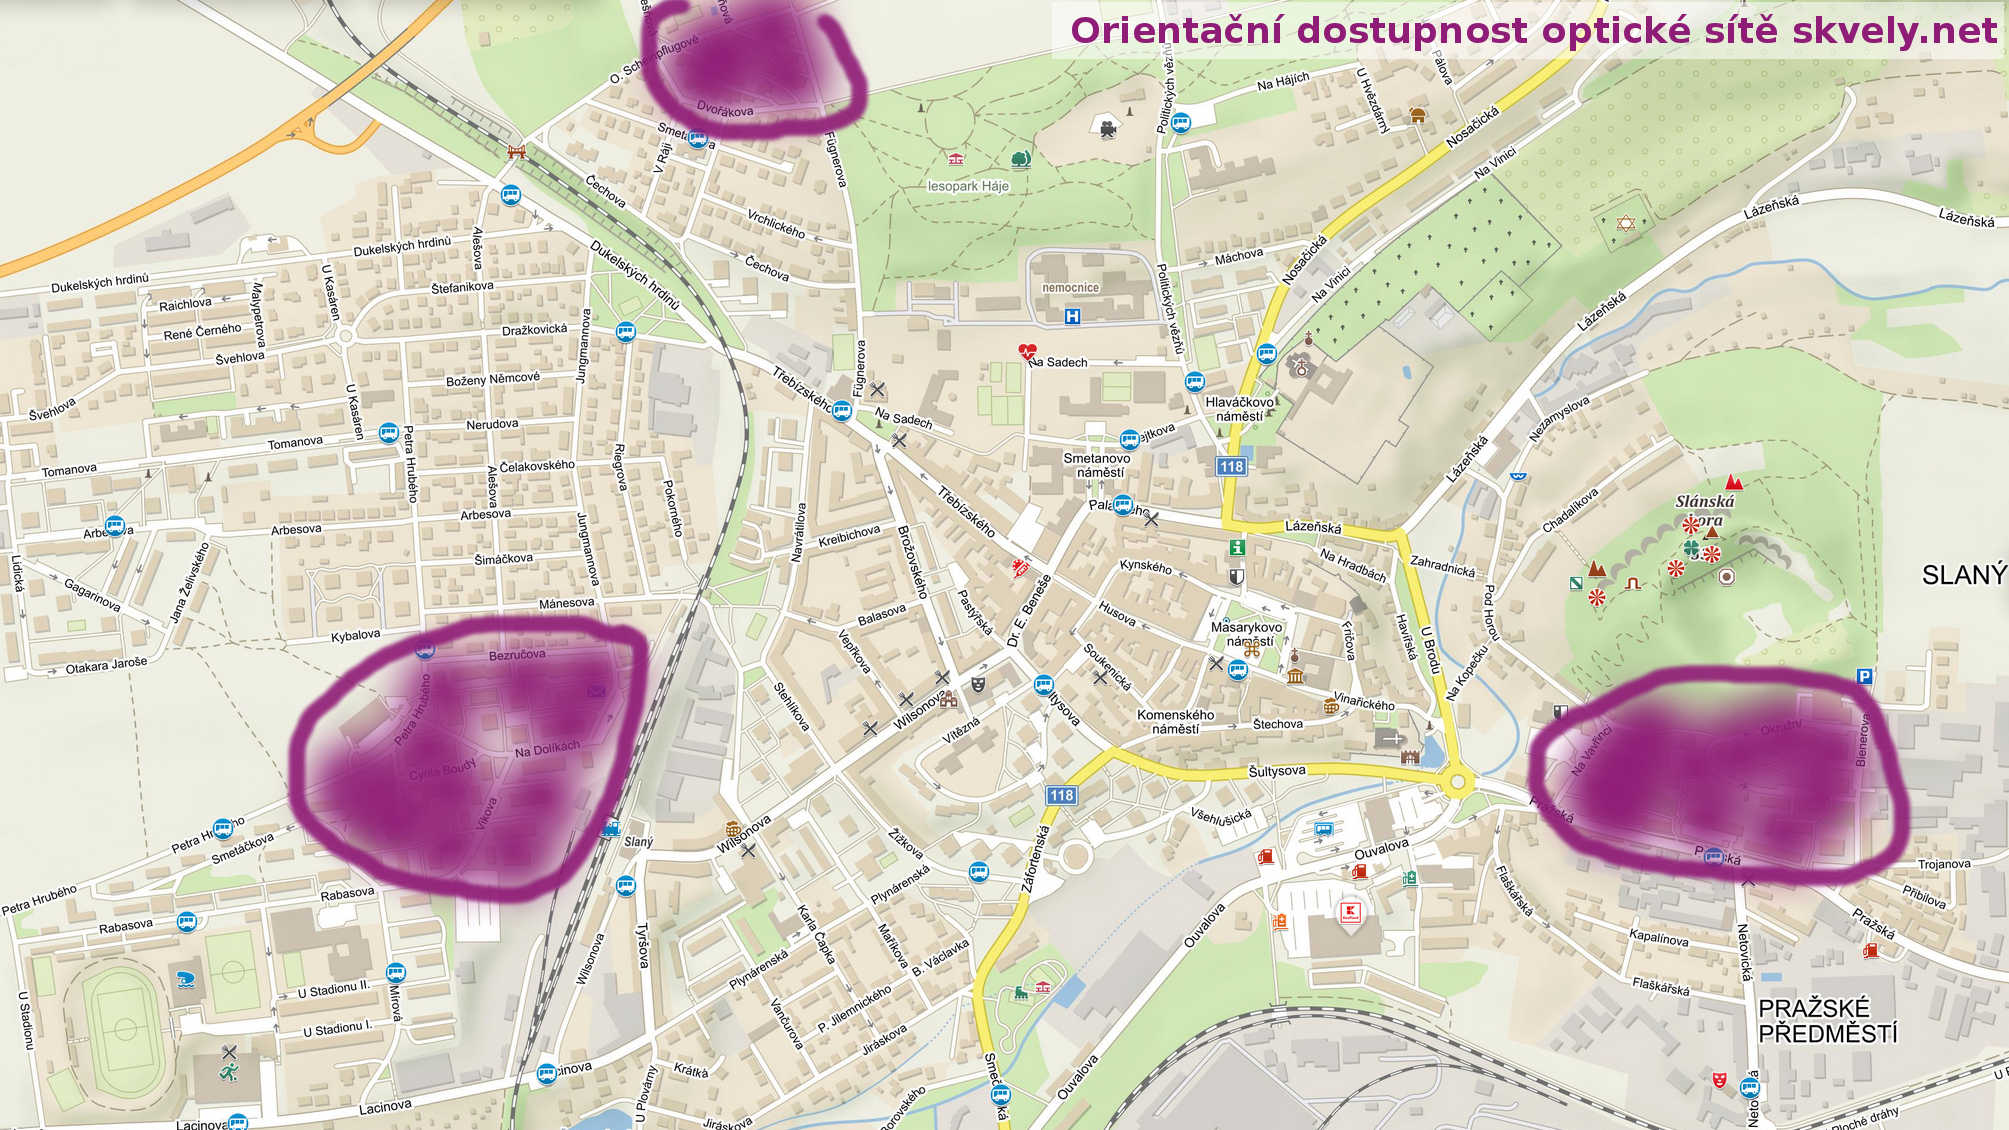 Ilustrační mapka pokrytí lokalit optickým připojením ve Slaném